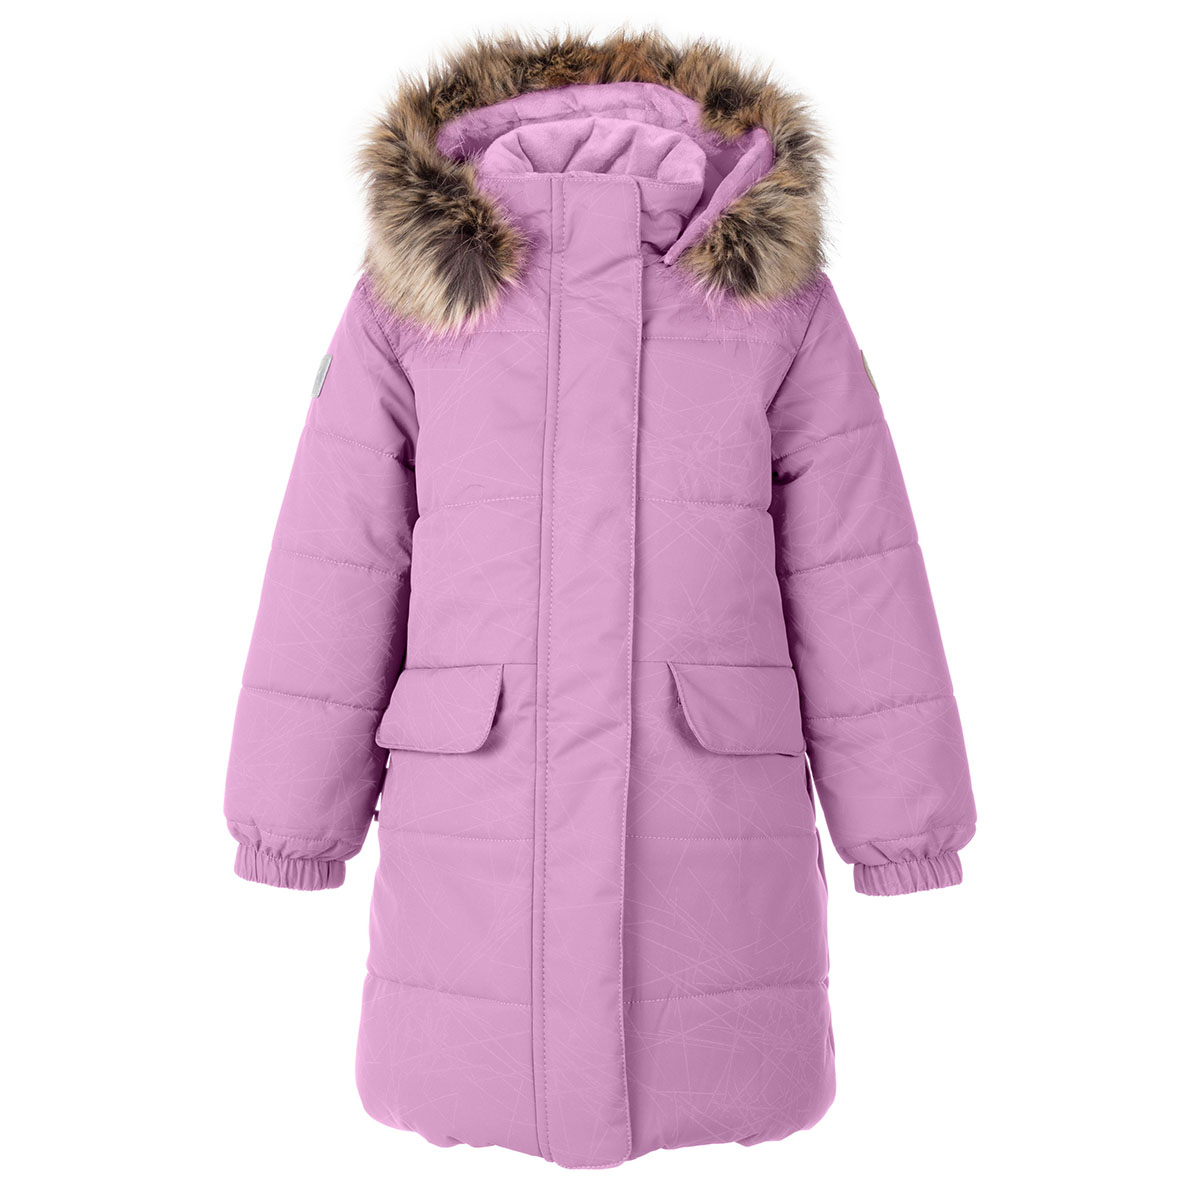 Пальто детское KERRY LENNA, 3831-лиловый со светоотражающим рисунком, 116